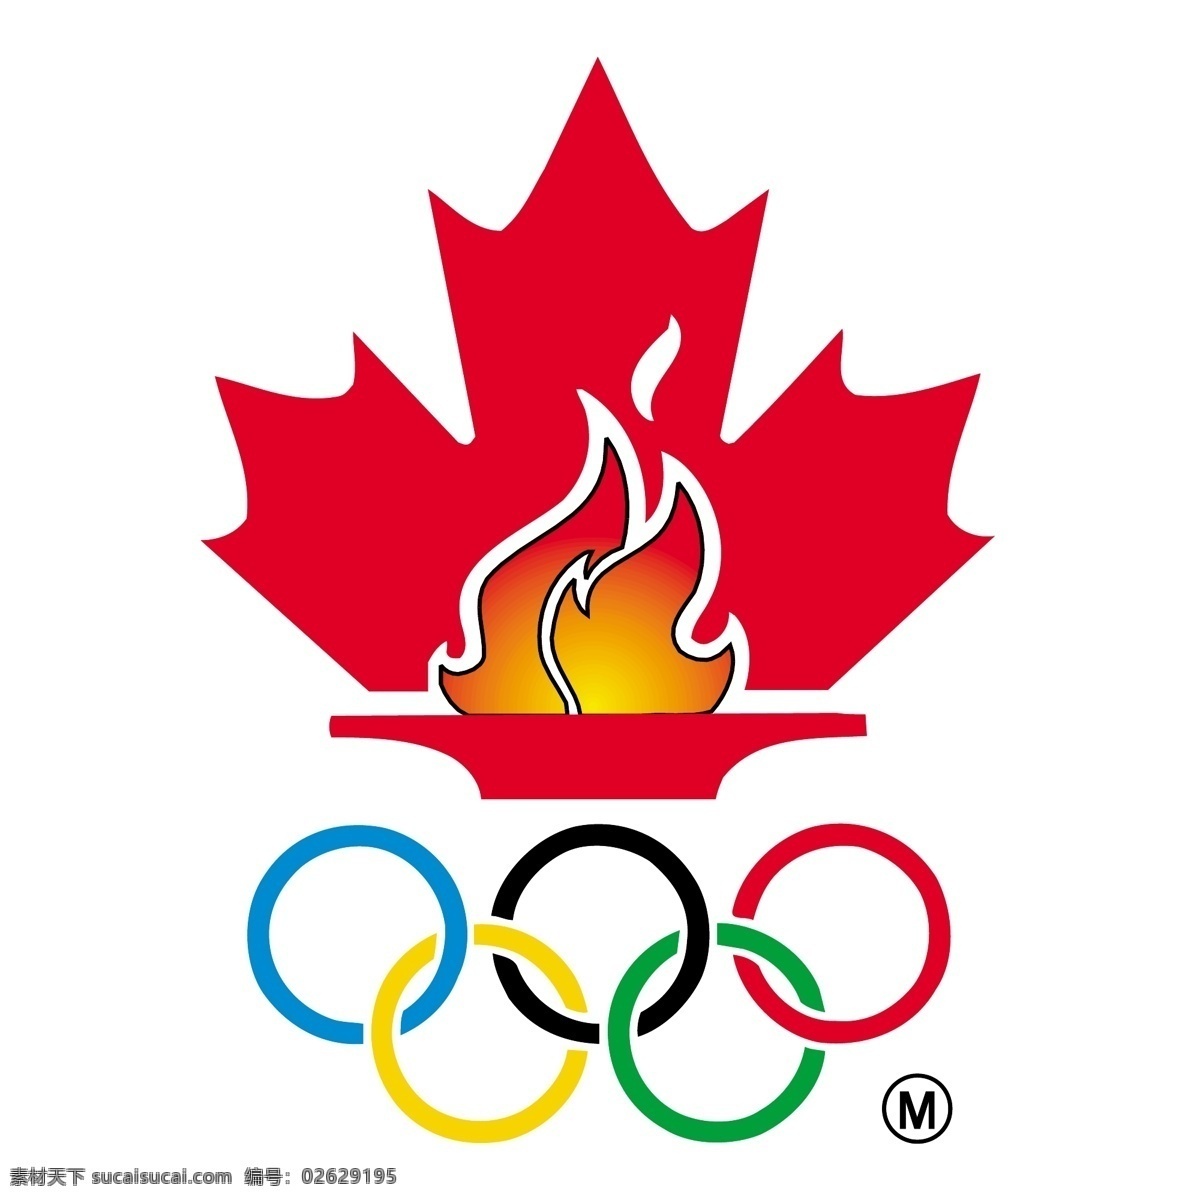 加拿大 奥运 代表队 奥运会 加拿大人